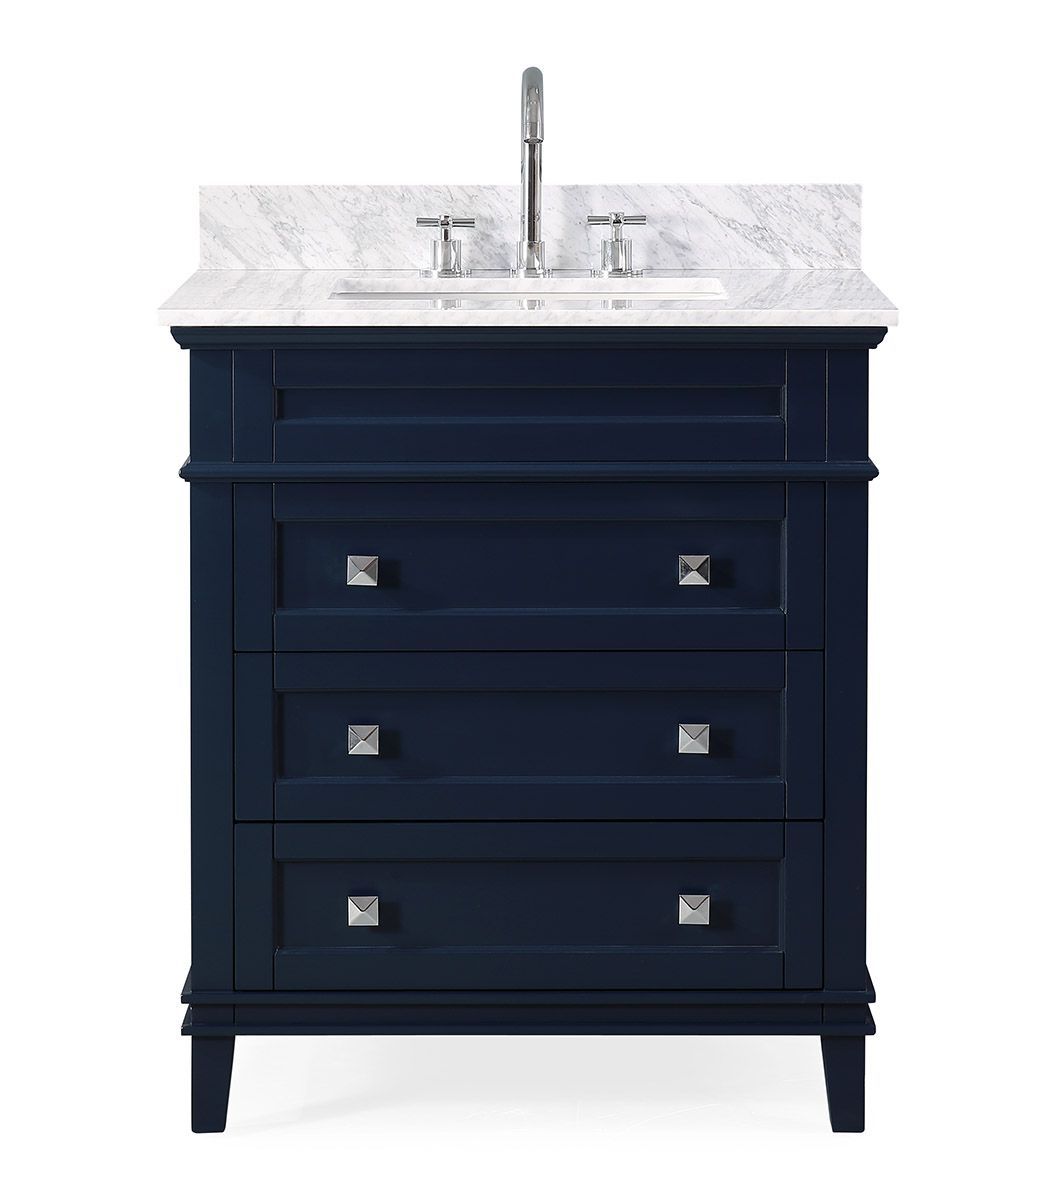 30" Contemporary Single Sink Navy Blue Bathroom Vanity with Italian Carrara Marble Countertop